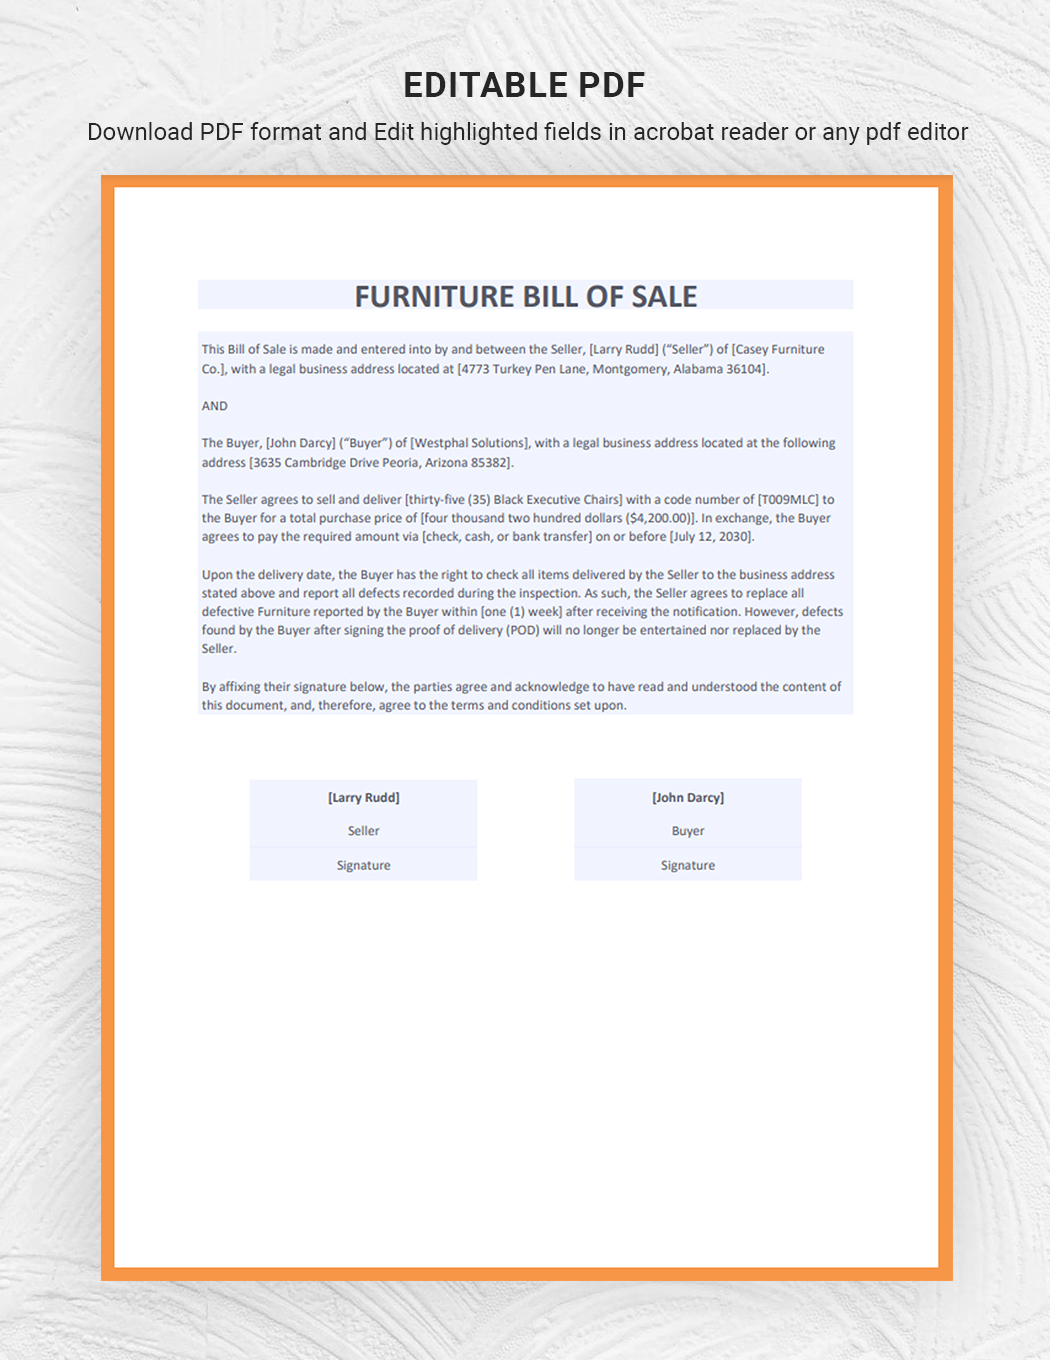 Furniture Bill of Sale Template